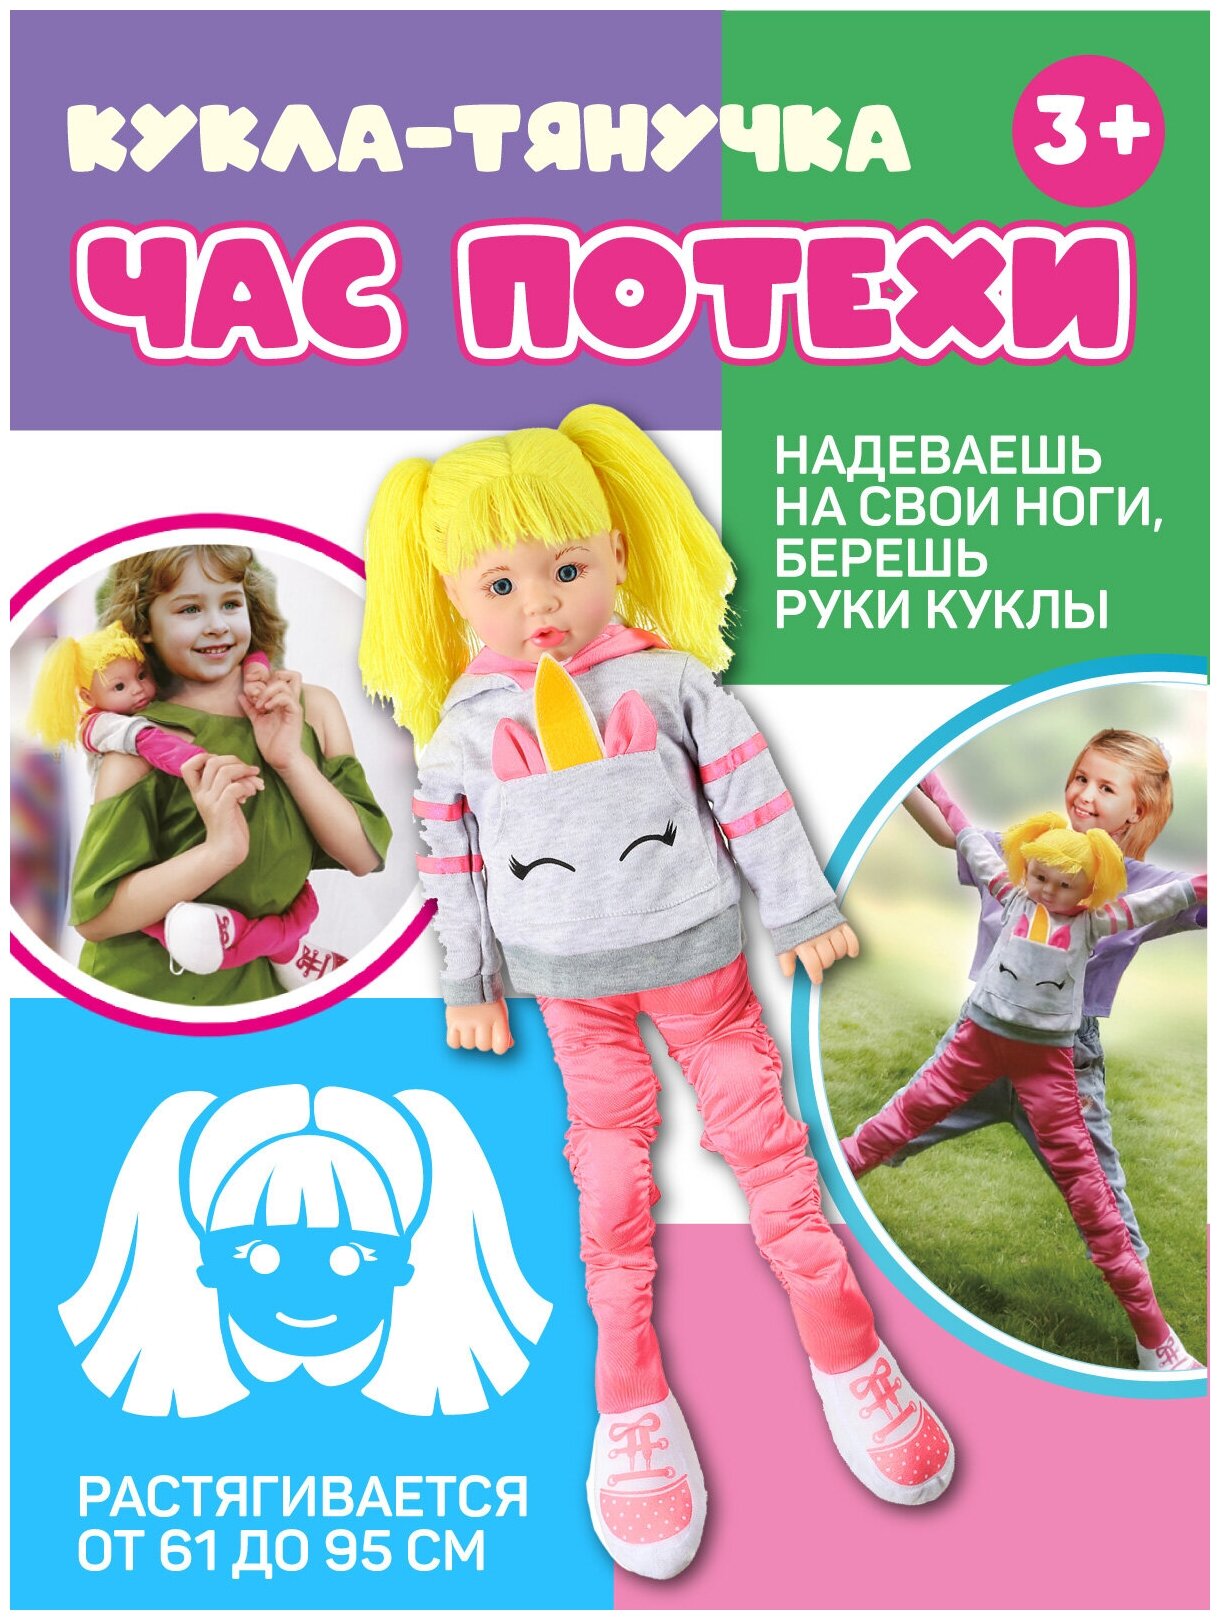 Кукла- Тянучка серия "Час потехи" , 61 см растягивается до 95 см, ростовая кукла, JB0208392